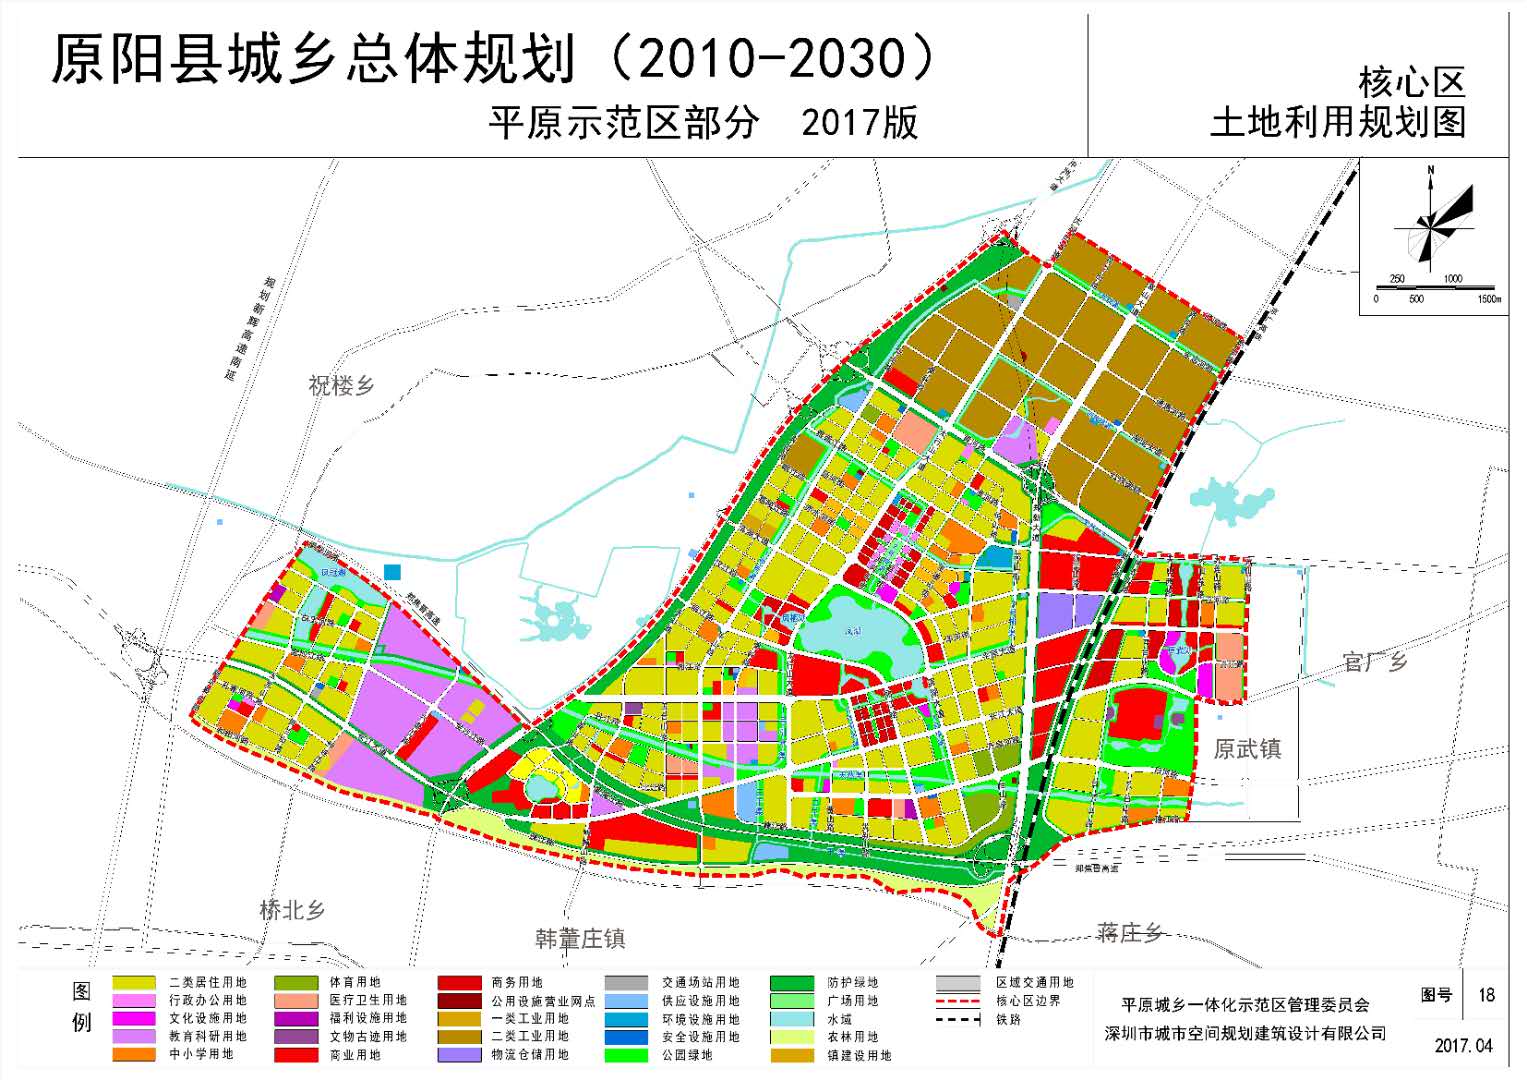 新乡平原示范区迎来大发展:建中等城市!对接大郑州